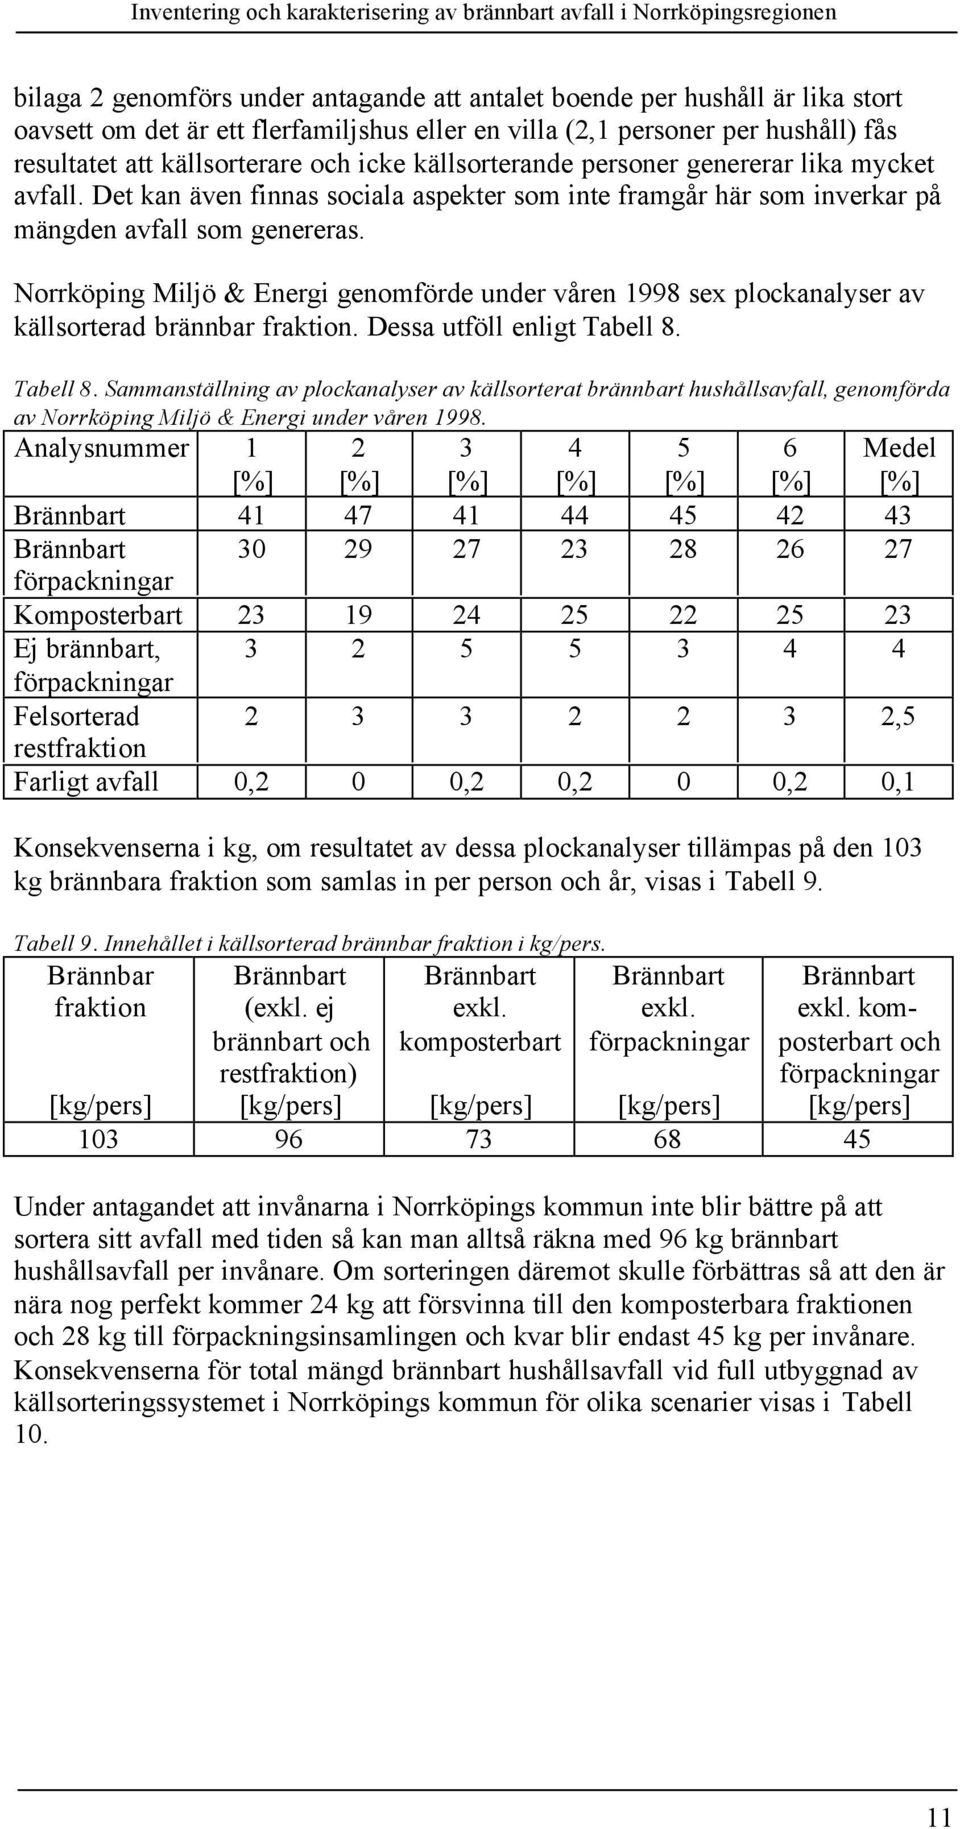 Norrköping Miljö & Energi genomförde under våren 1998 sex plockanalyser av källsorterad brännbar fraktion. Dessa utföll enligt Tabell 8.